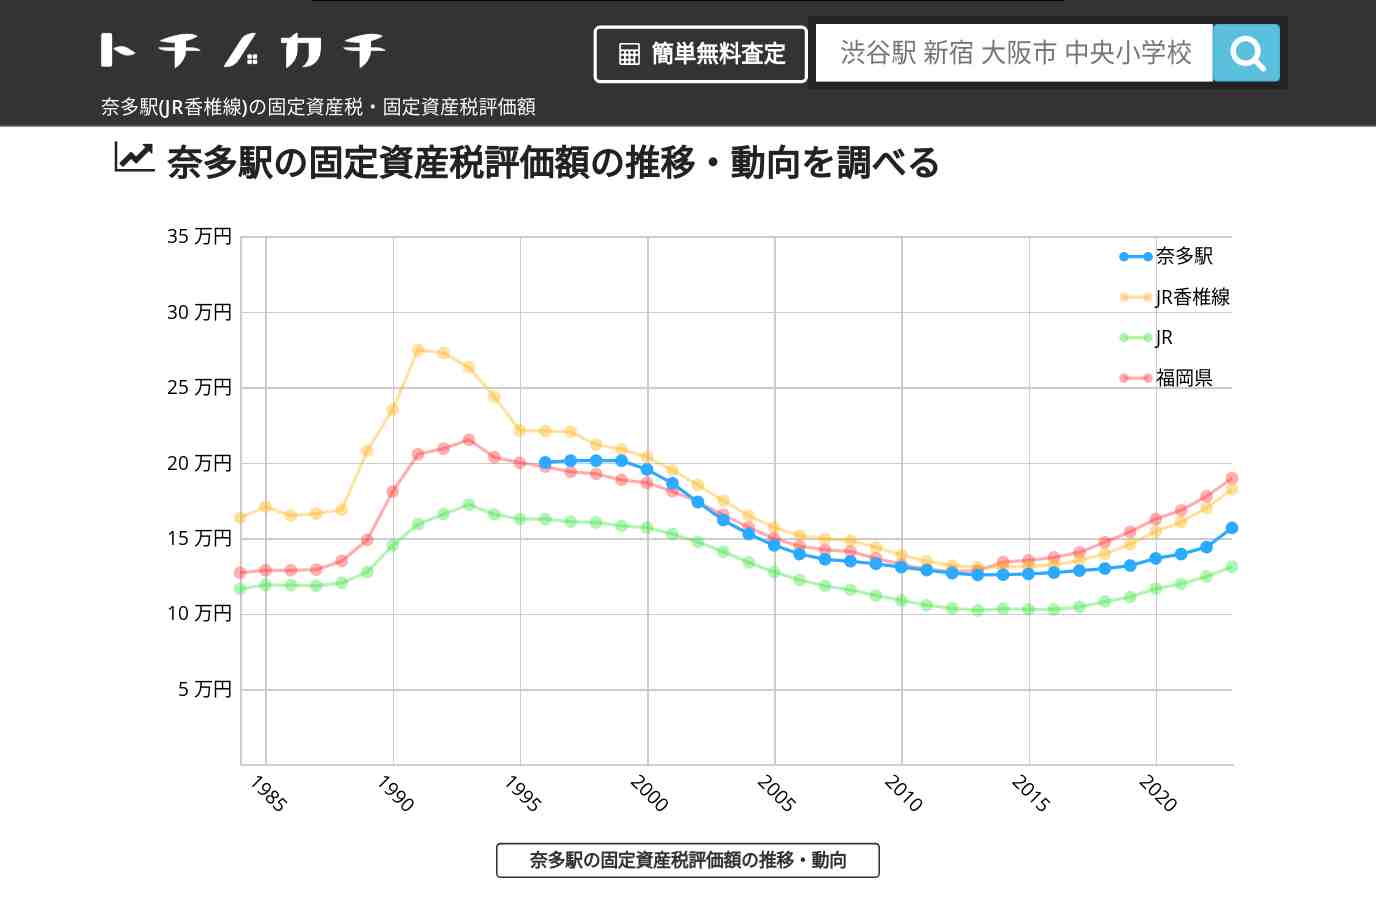 奈多駅(JR香椎線)の固定資産税・固定資産税評価額 | トチノカチ